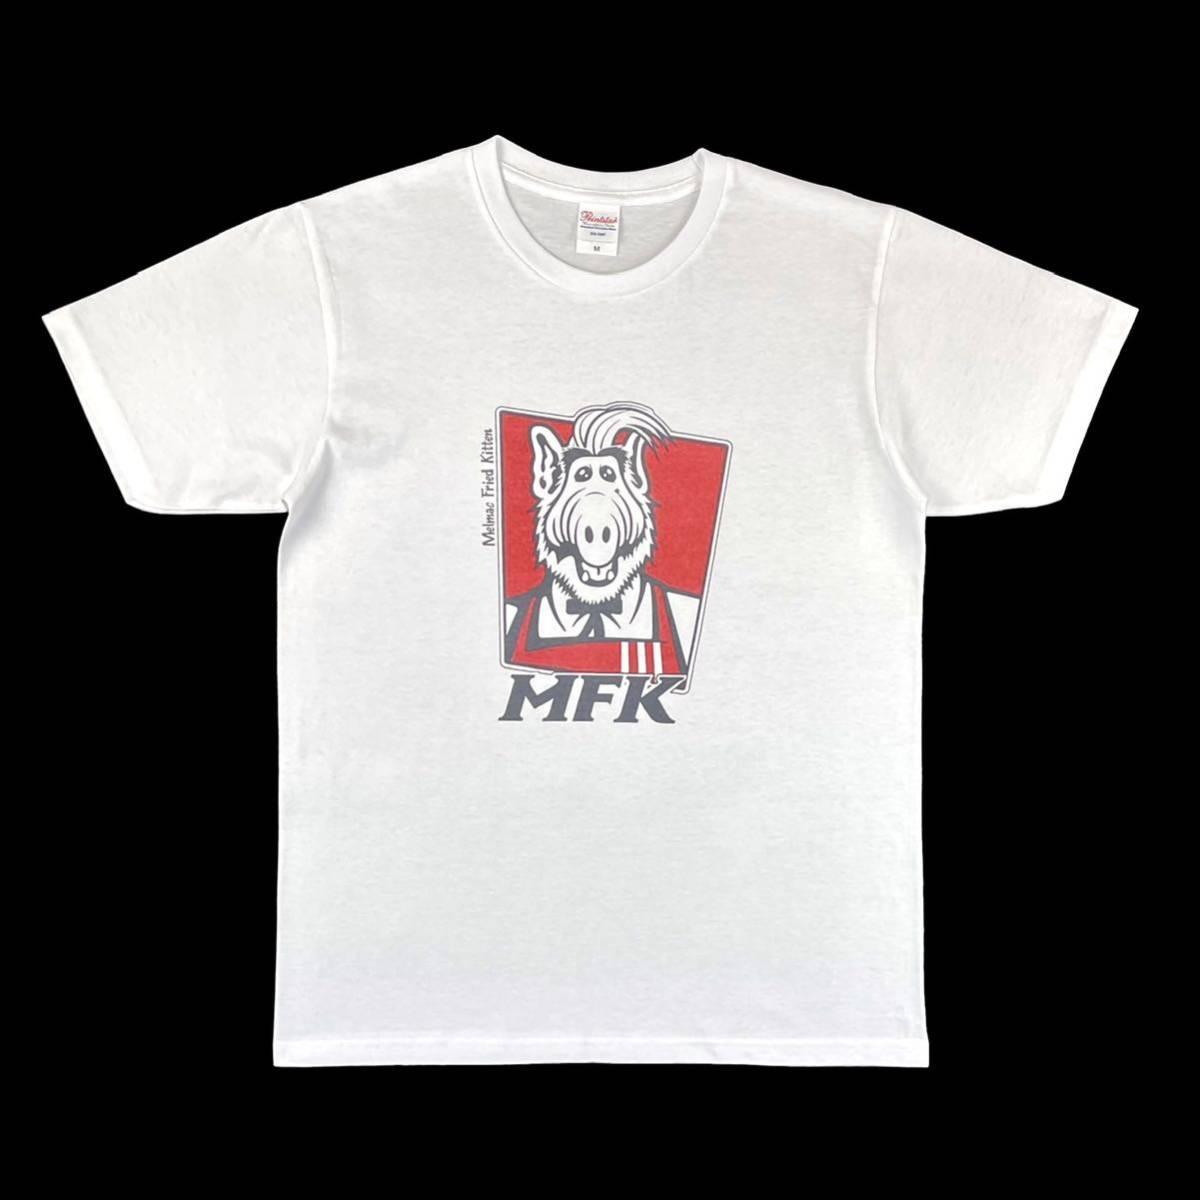 新品 ALF アルフ メルマック星 宇宙人 KFC ケンタッキー フライドチキン カーネル サンダース おじさん Tシャツ 小さい タイト 白 Sサイズ